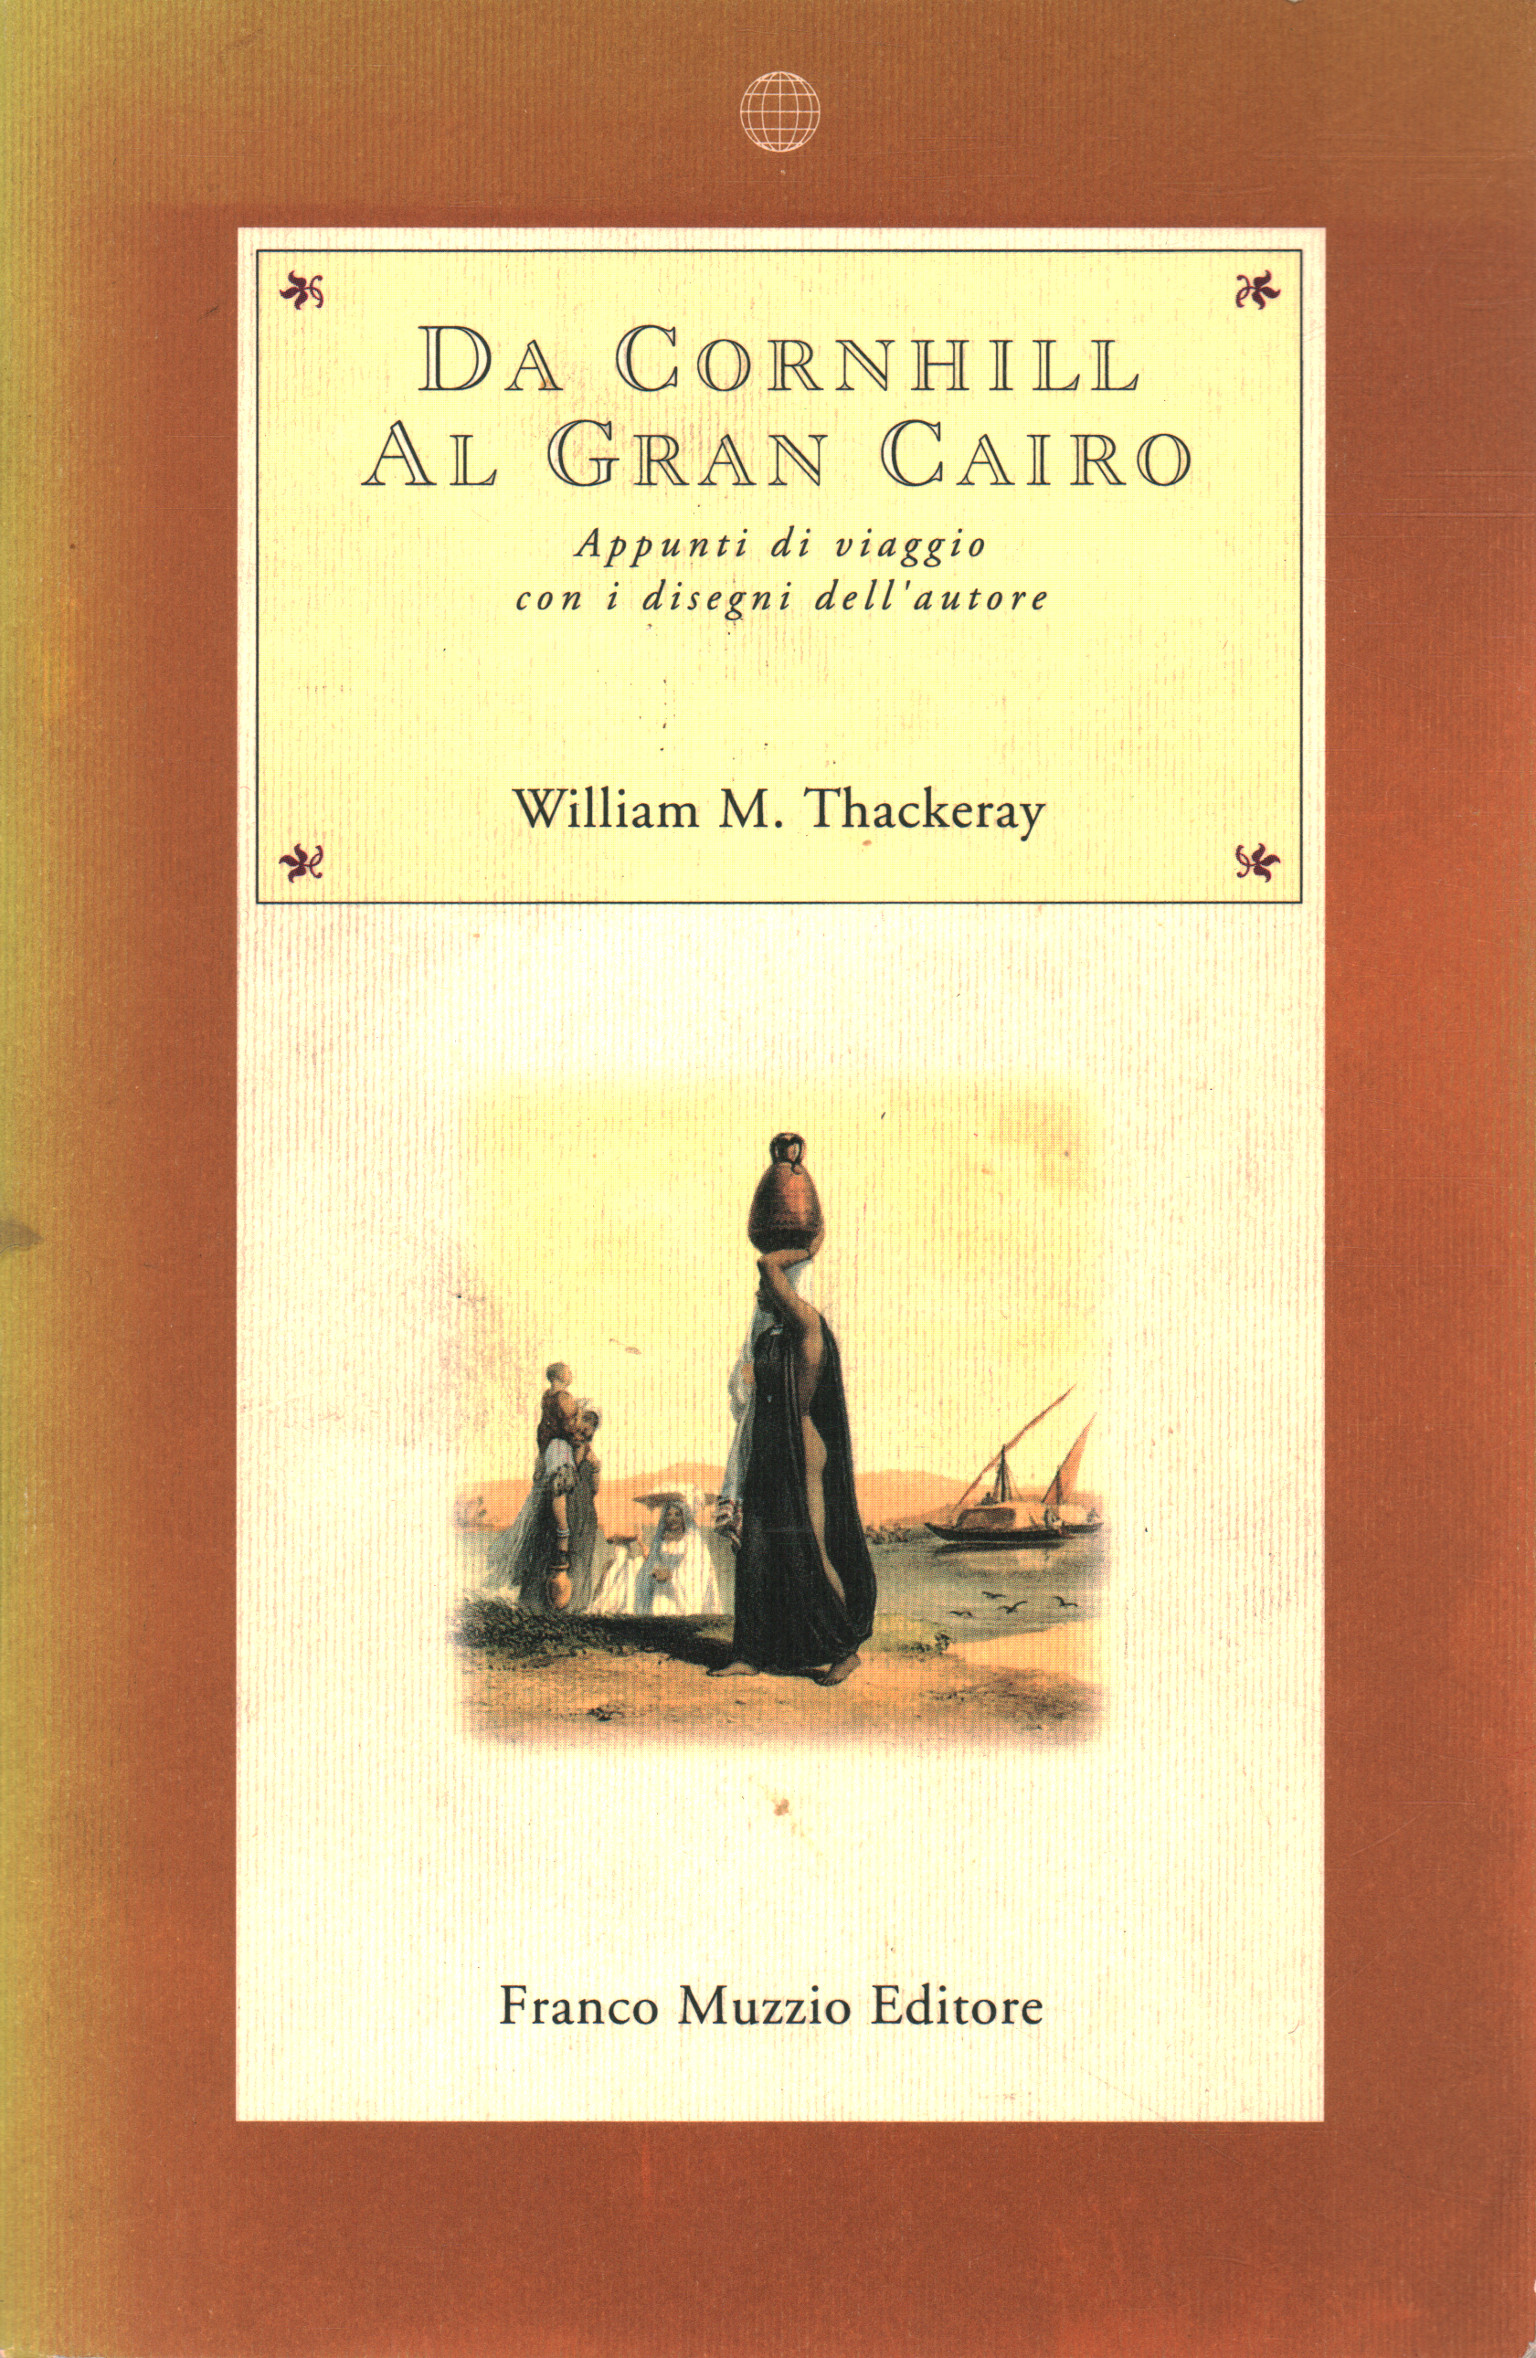 Da Cornhill al Gran Cairo, William M. Thackeray